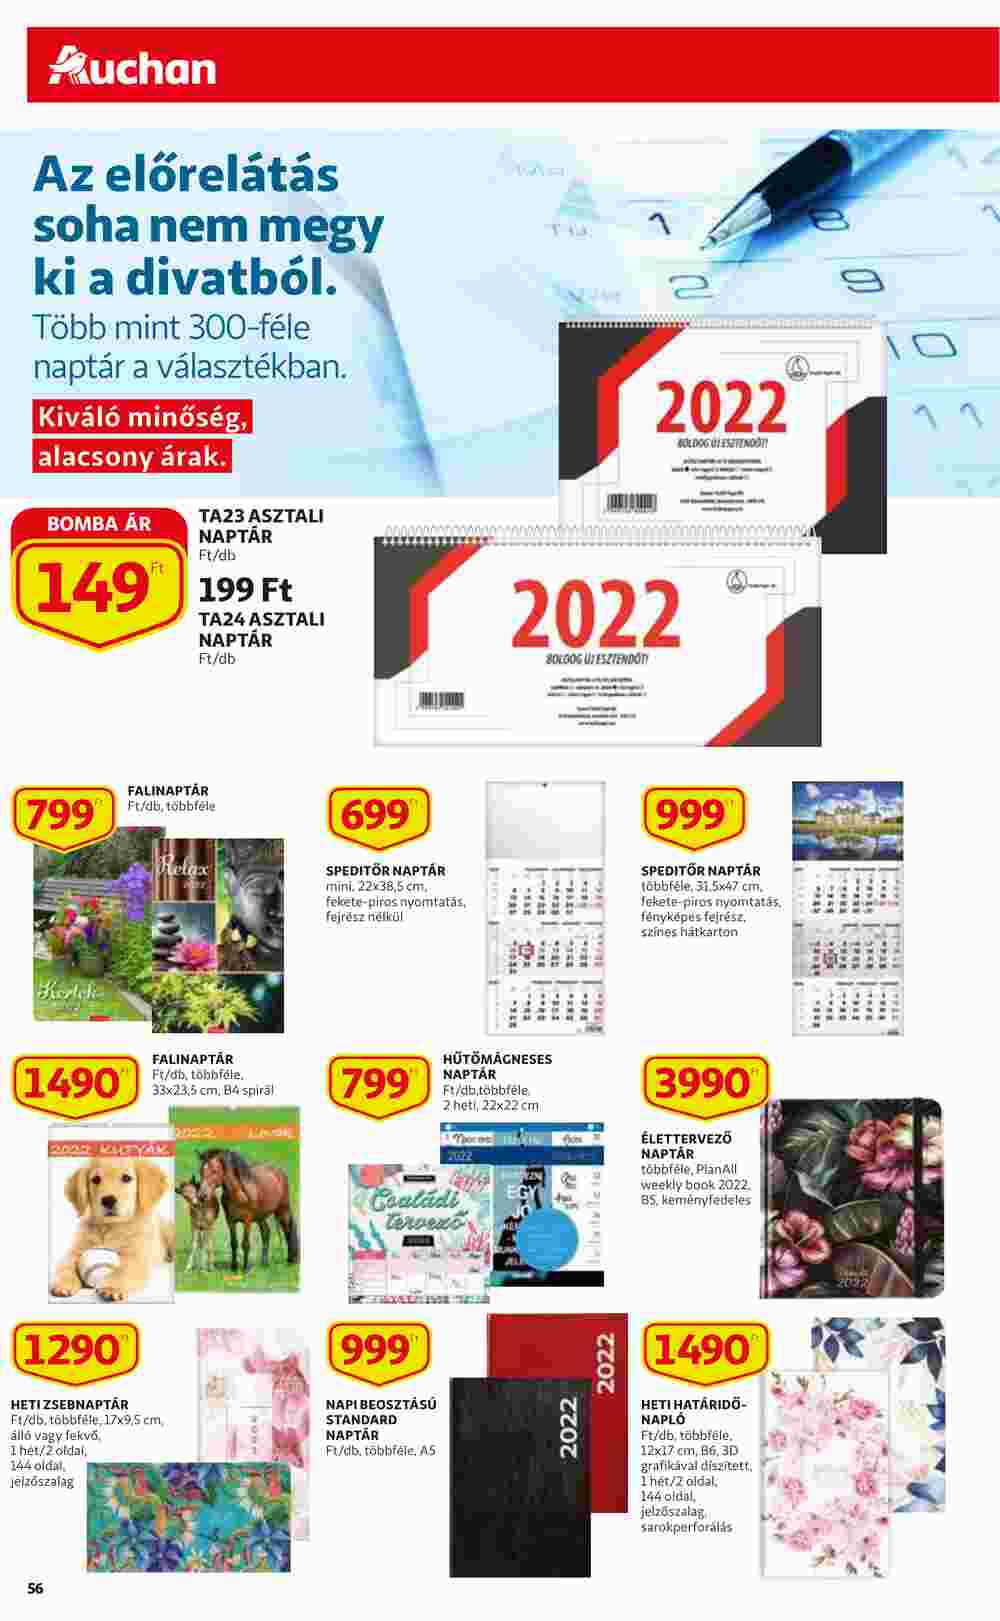 Auchan akciós újság 2021.11.18-tól - 56. oldal.